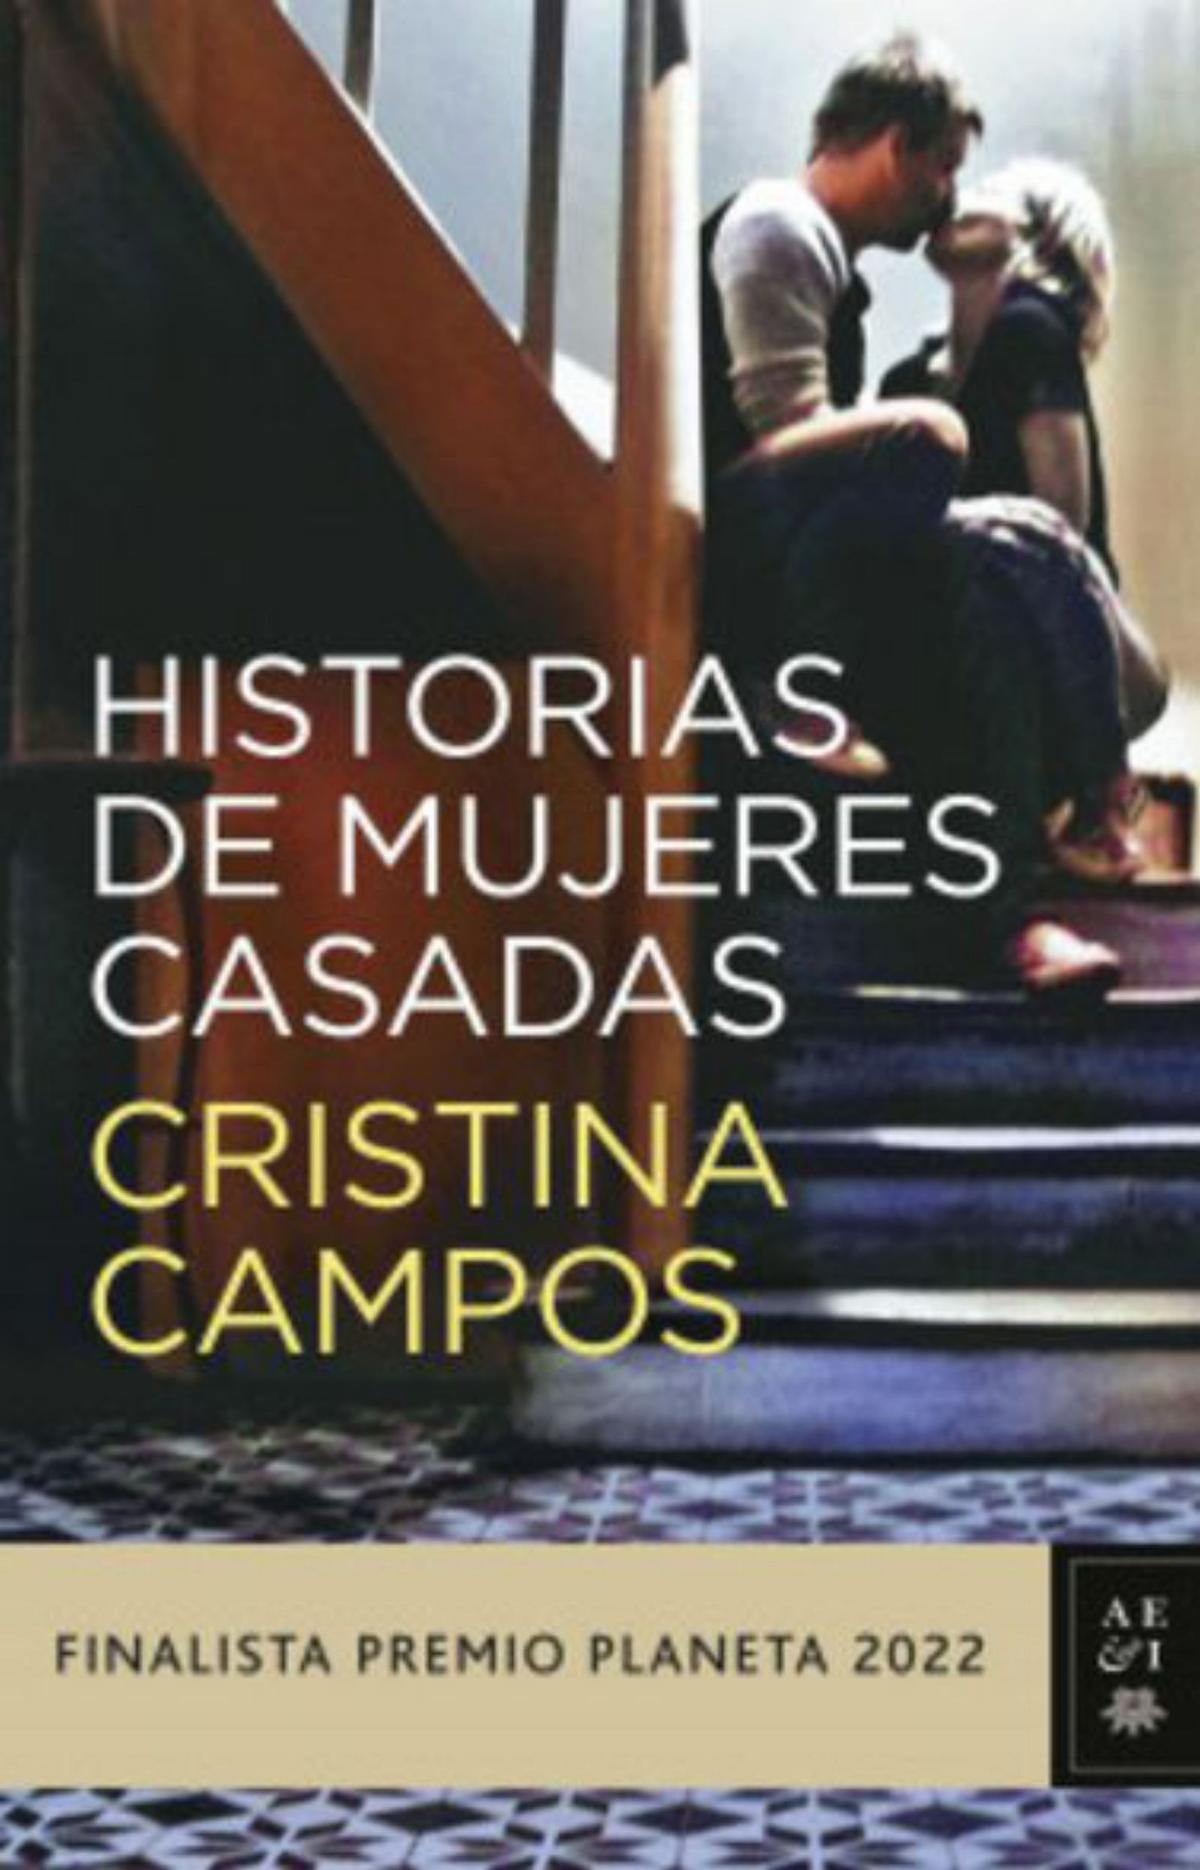 Cristina Campos. Ferran nadeu |